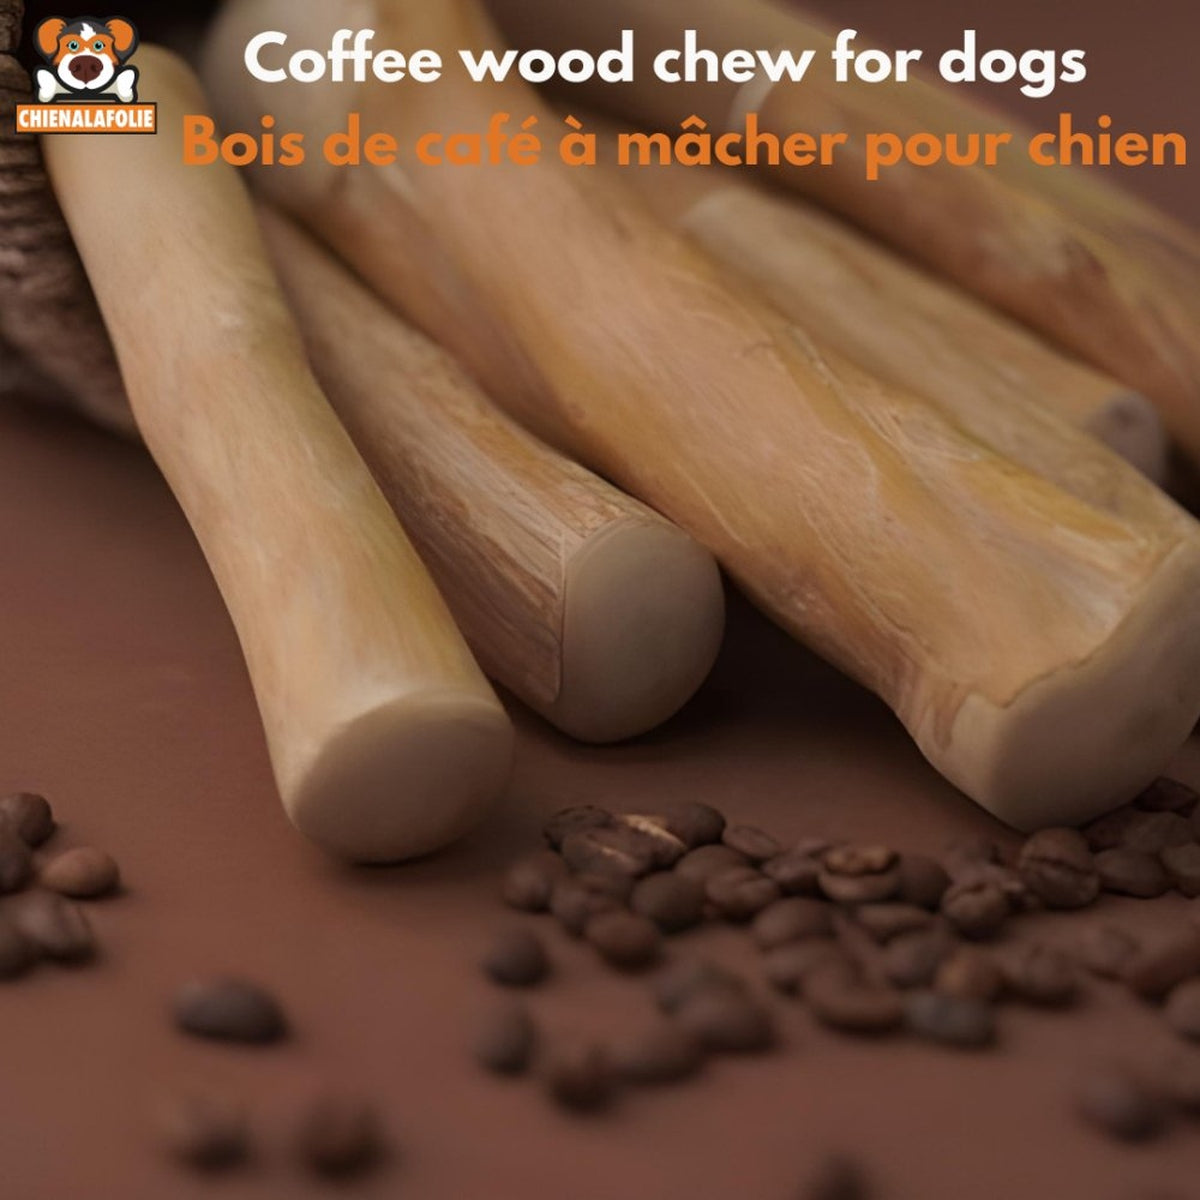 Bois de café à mâcher pour chien - coffee wood chew stick - M - Bâtons naturels - Chienalafolie